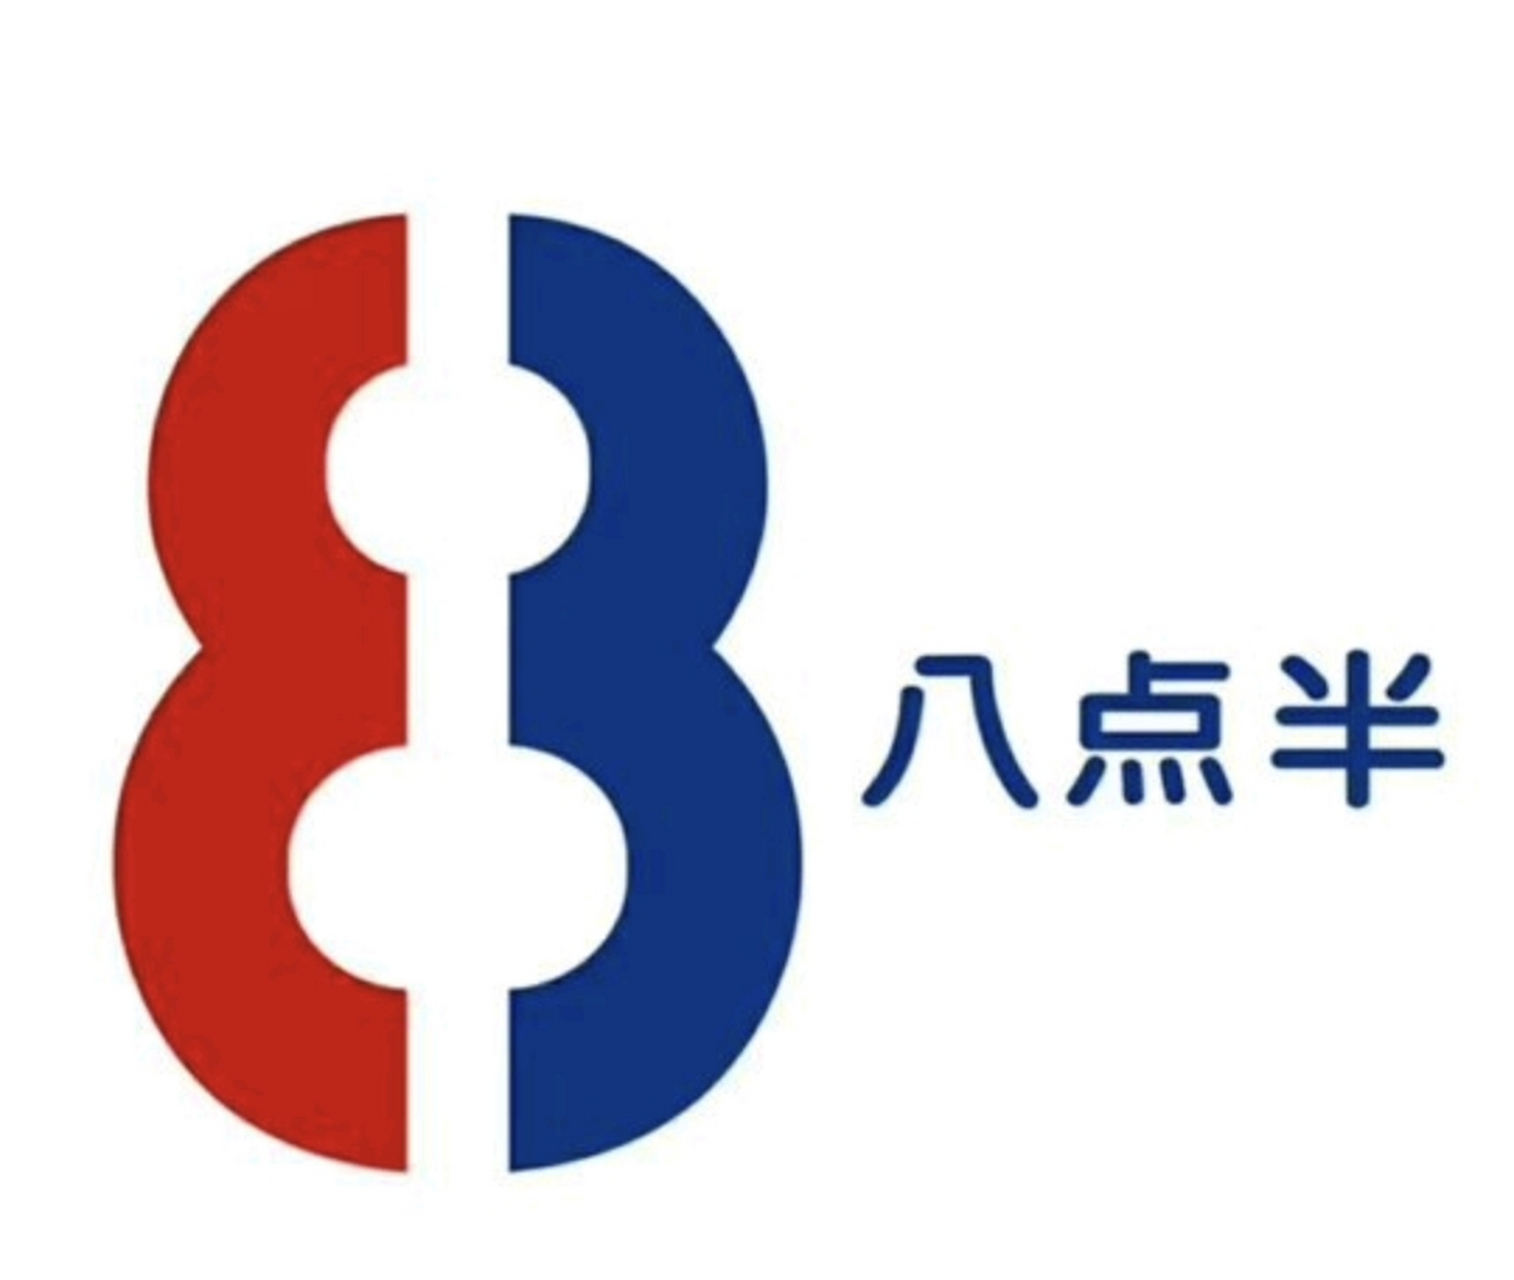 八点半logo图片